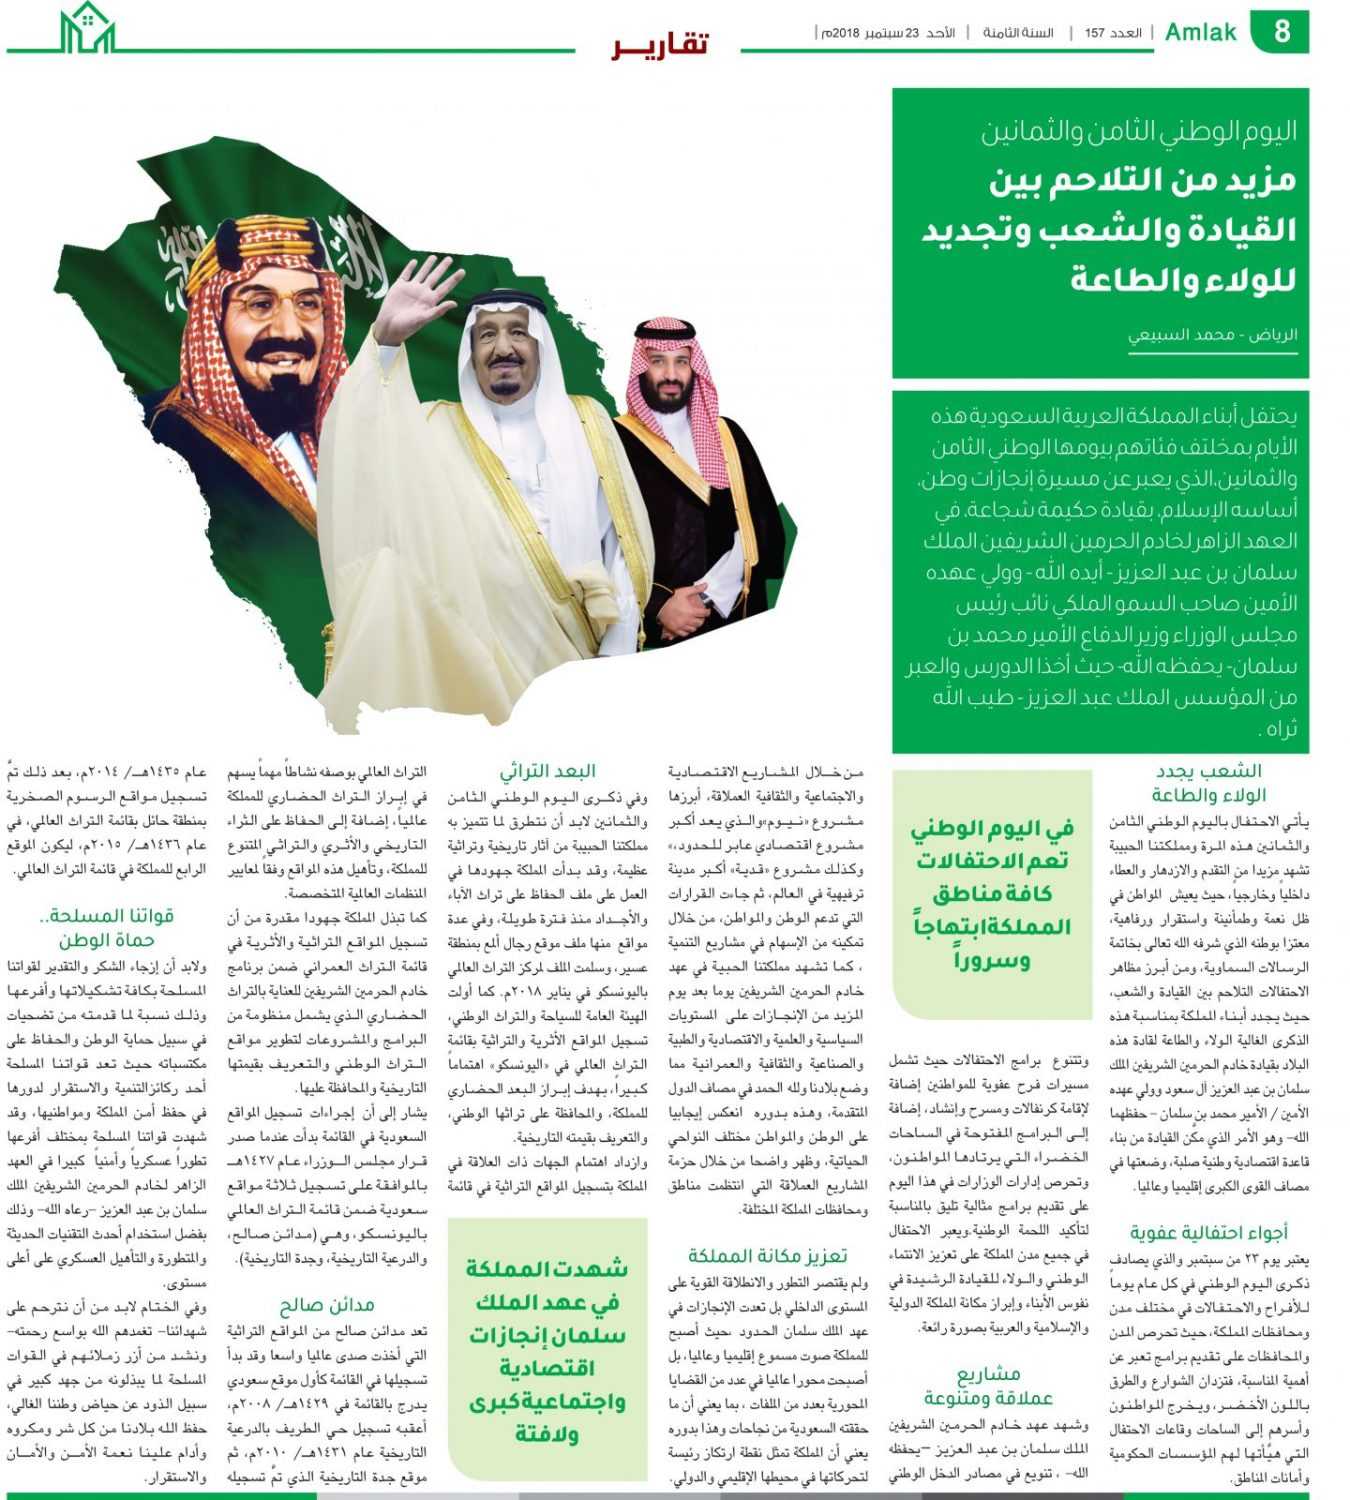 مقال عن إنجازات المملكة العربية السعودية